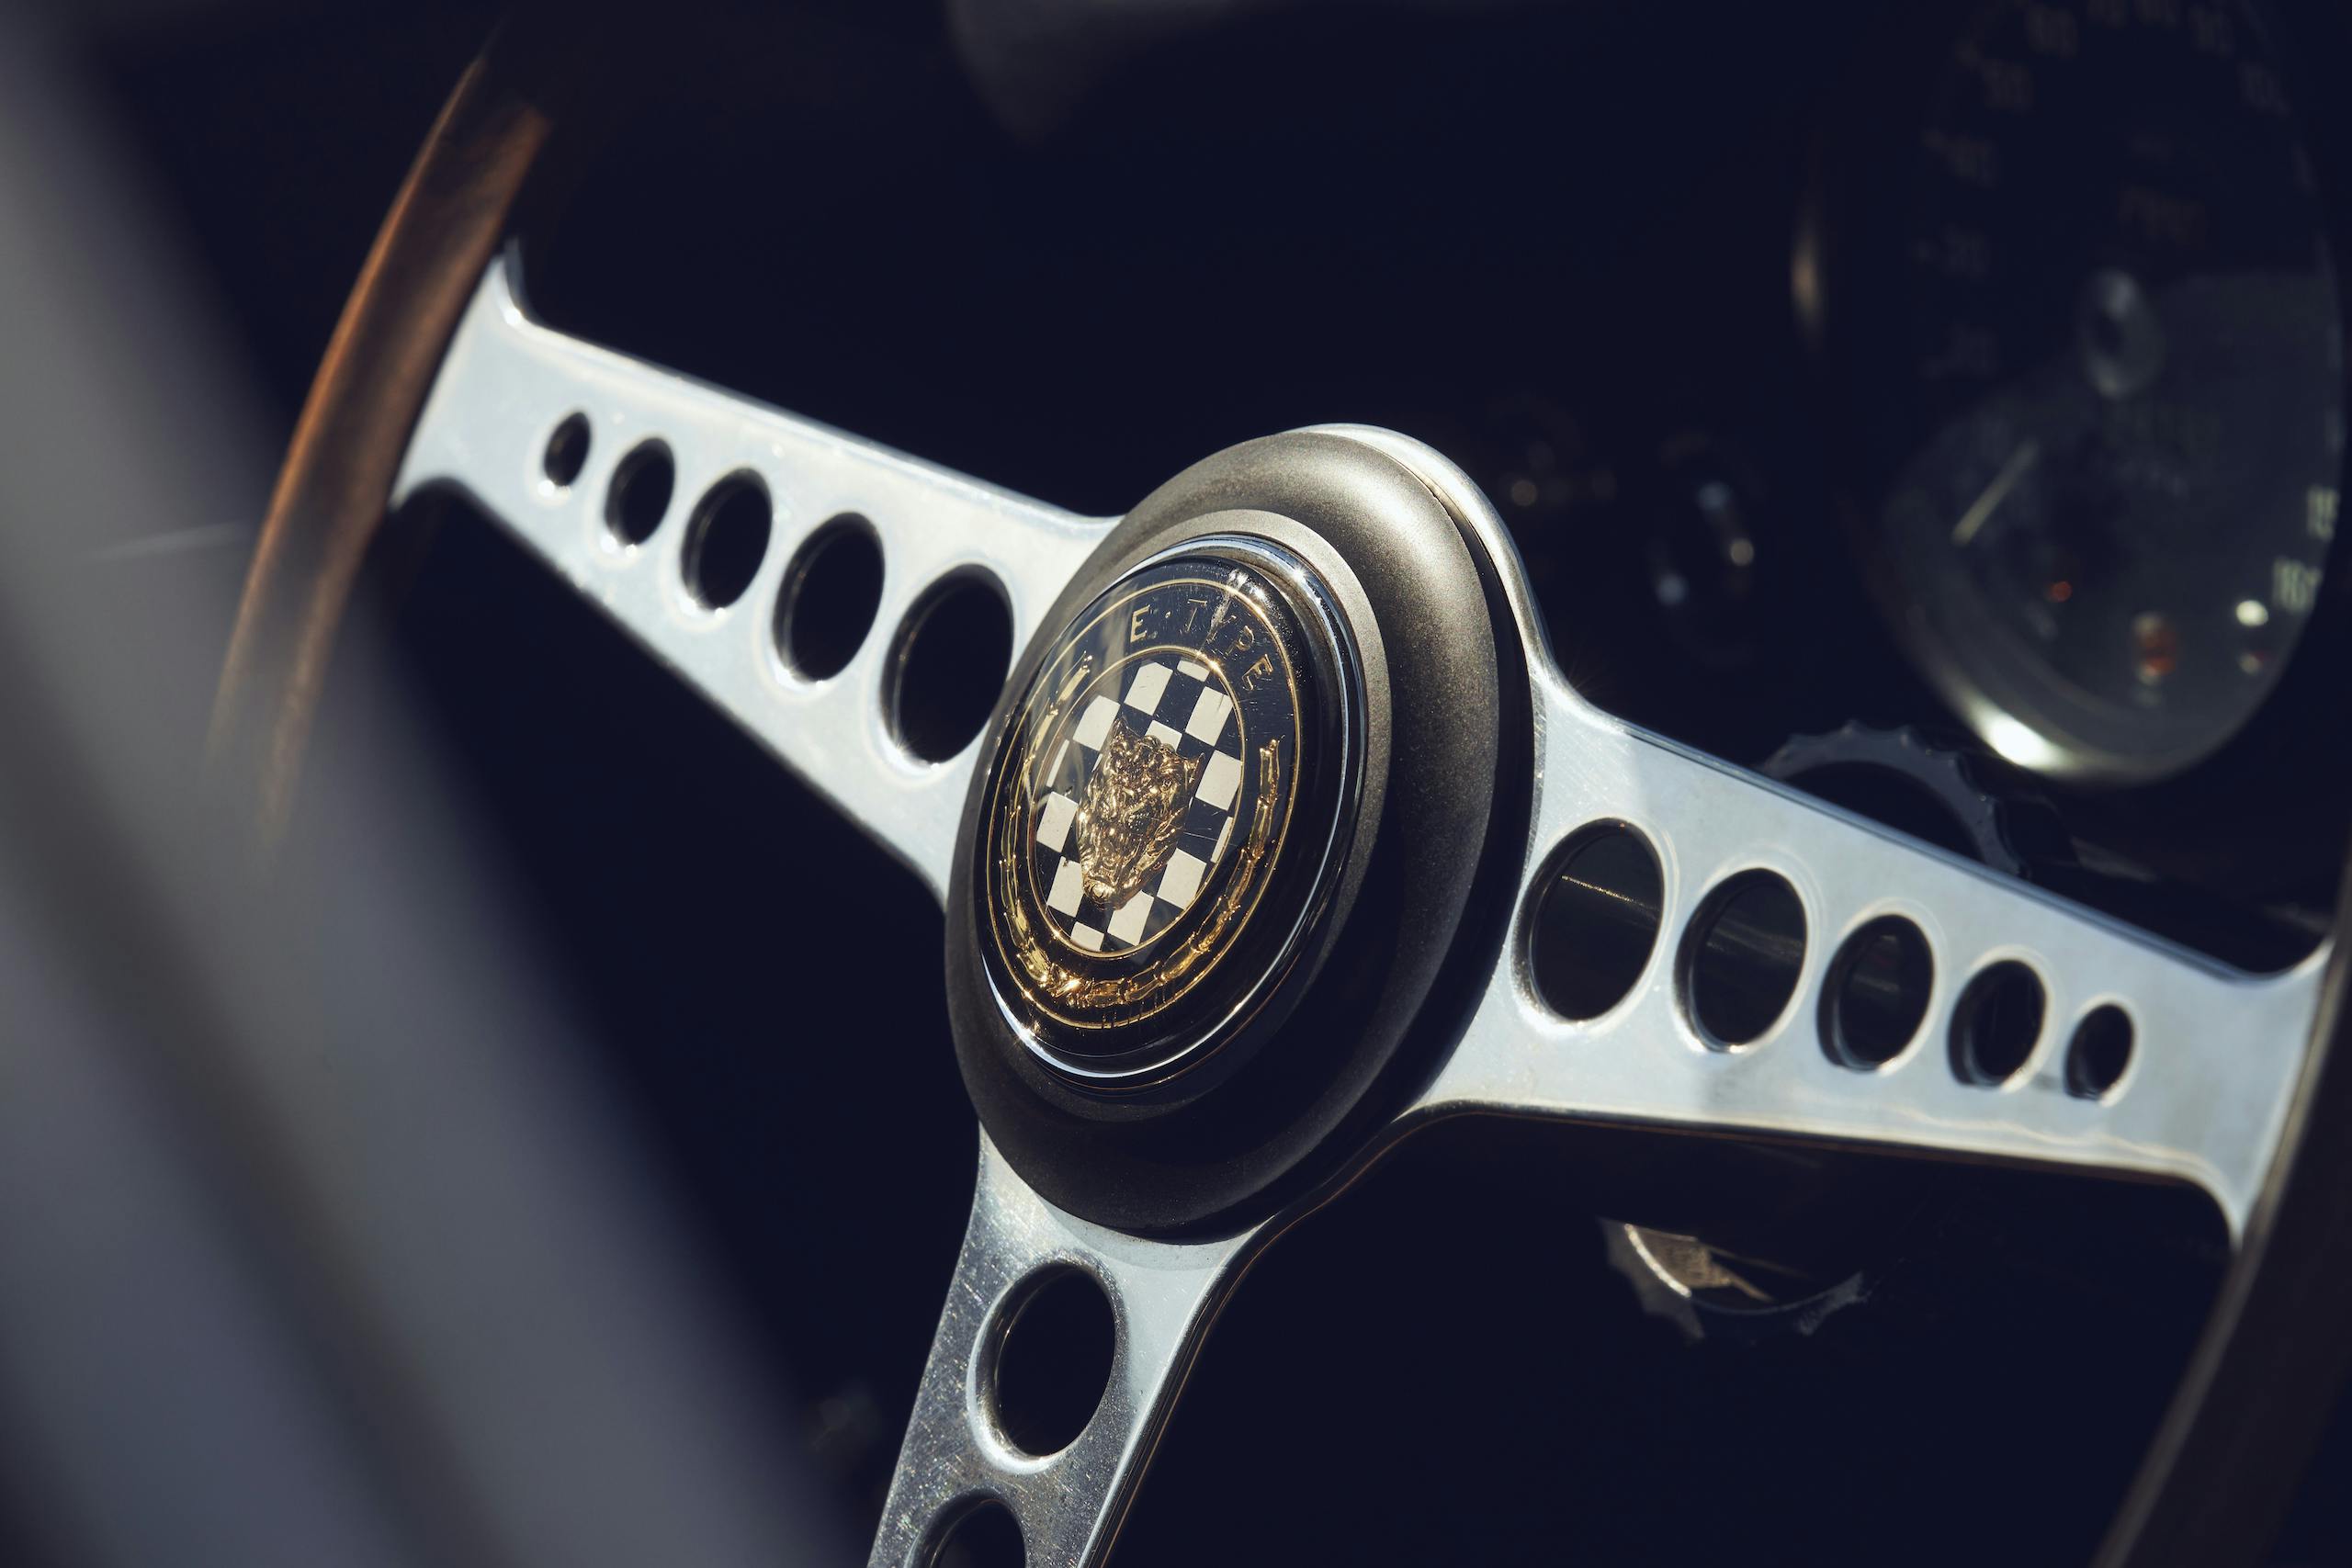 Jaguar E-Type steering wheel center detail